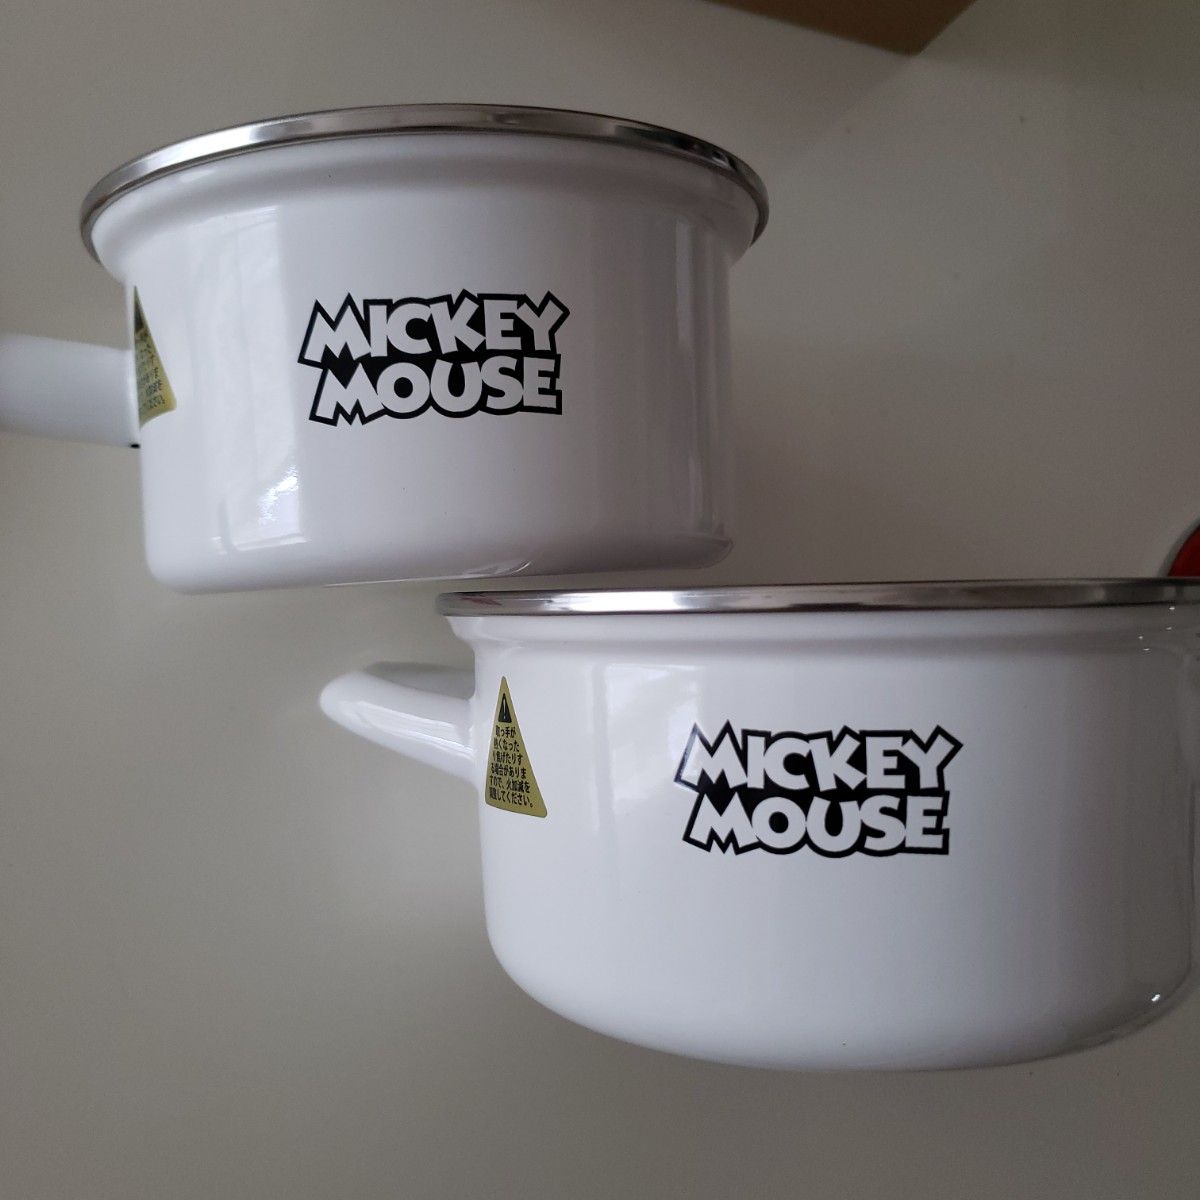 【新品お箱】フジホーローミッキーマウス両手鍋&ミルクパン&PE蓋付き保存便利 調理器具